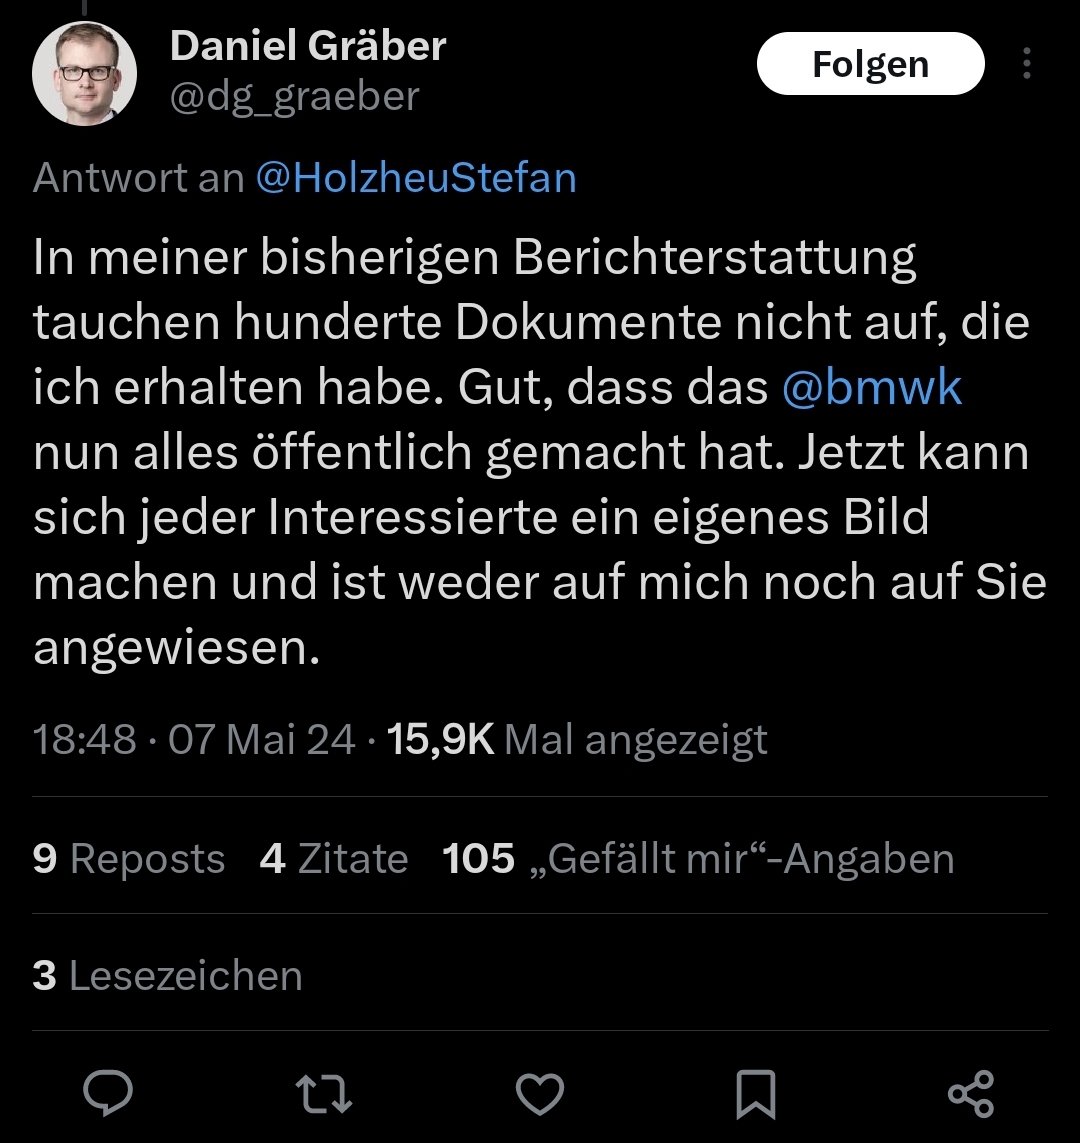 Das ist mal interessant: Herr Gräber sagt hier quasi, dass er bewusst Material zurückgehalten hat bei seiner Berichterstattung. Blöd nur, dass jetzt alles zugänglich ist und seine Manipulation und Kampagne auffliegt.